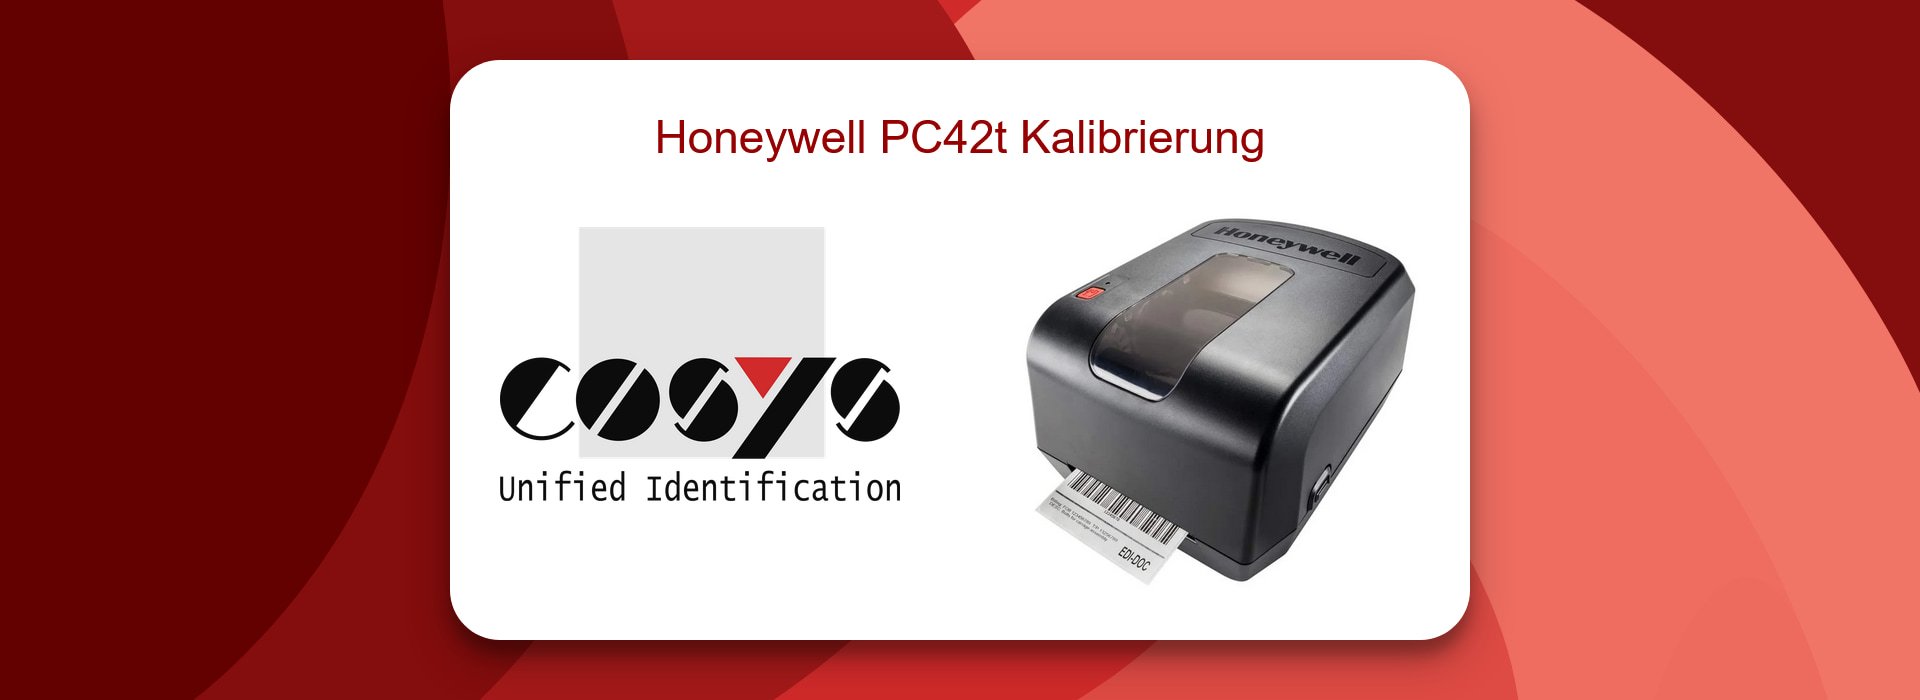 Honeywell PC42t: Probleme bei Kalibrierung